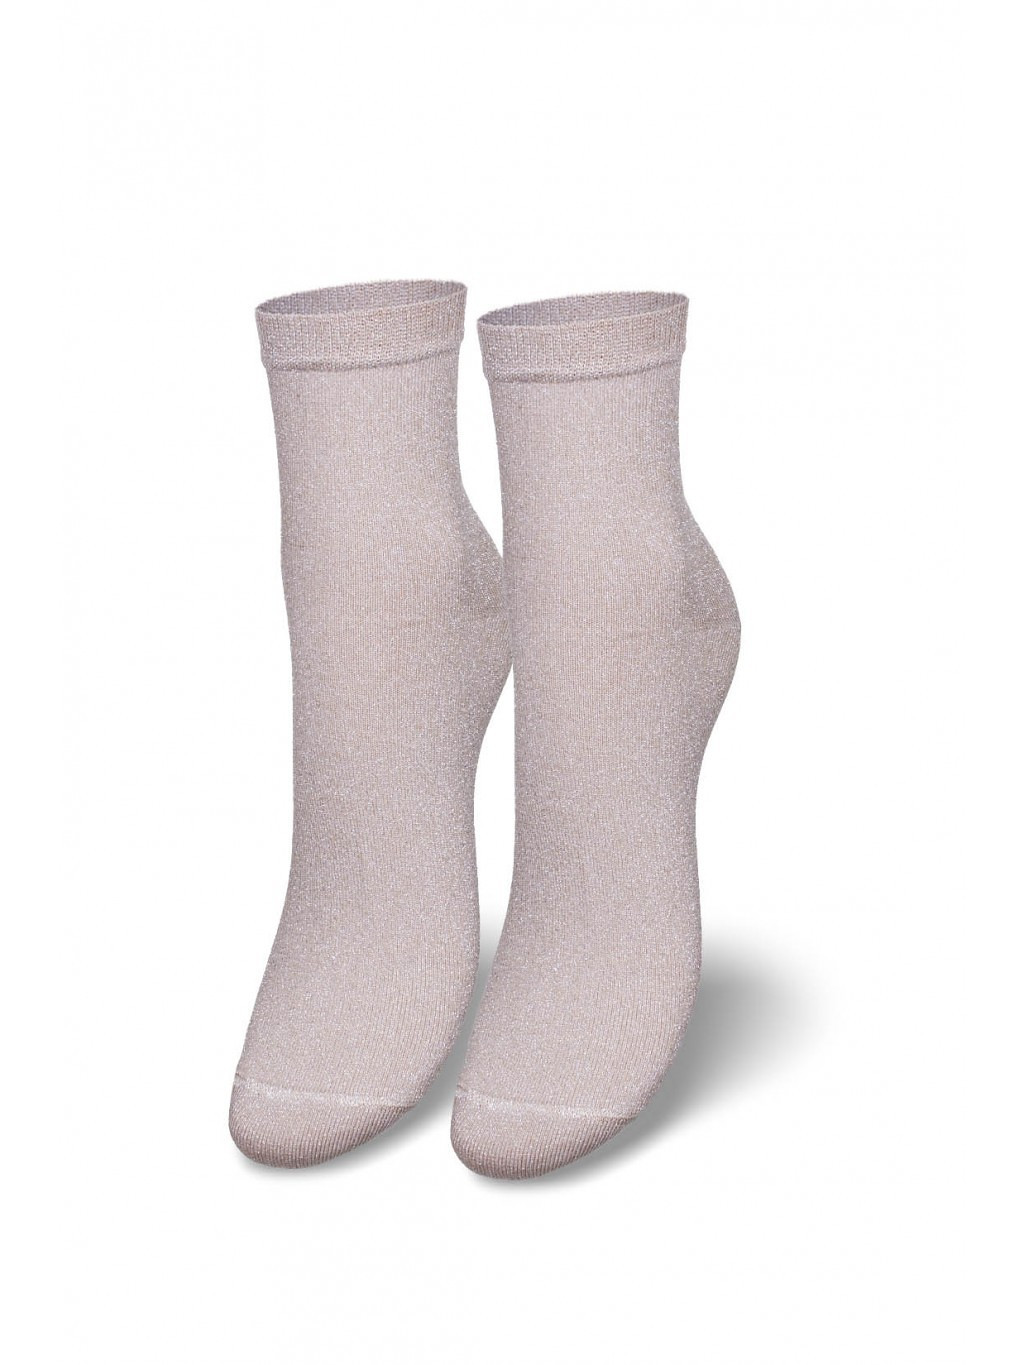 Dámské ponožky Milena 1191 Lurex 37-41 šedá 37-41